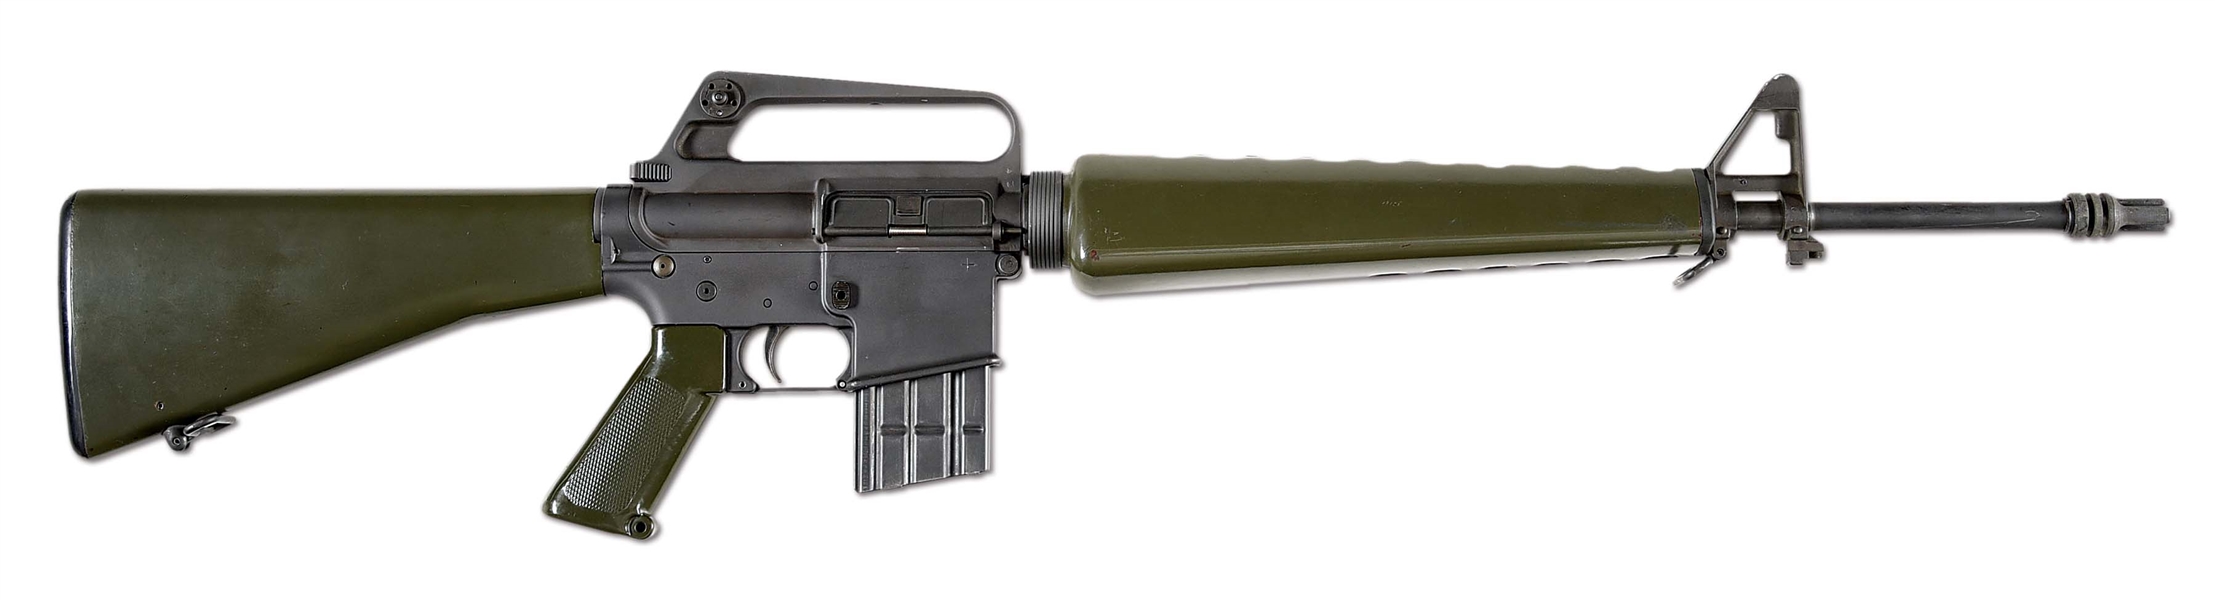 (N) EXCEEDINGLY SCARCE COLT/ARMALITE AR-15 MODEL 01 MACHINE GUN (FULLY TRANSFERABLE).